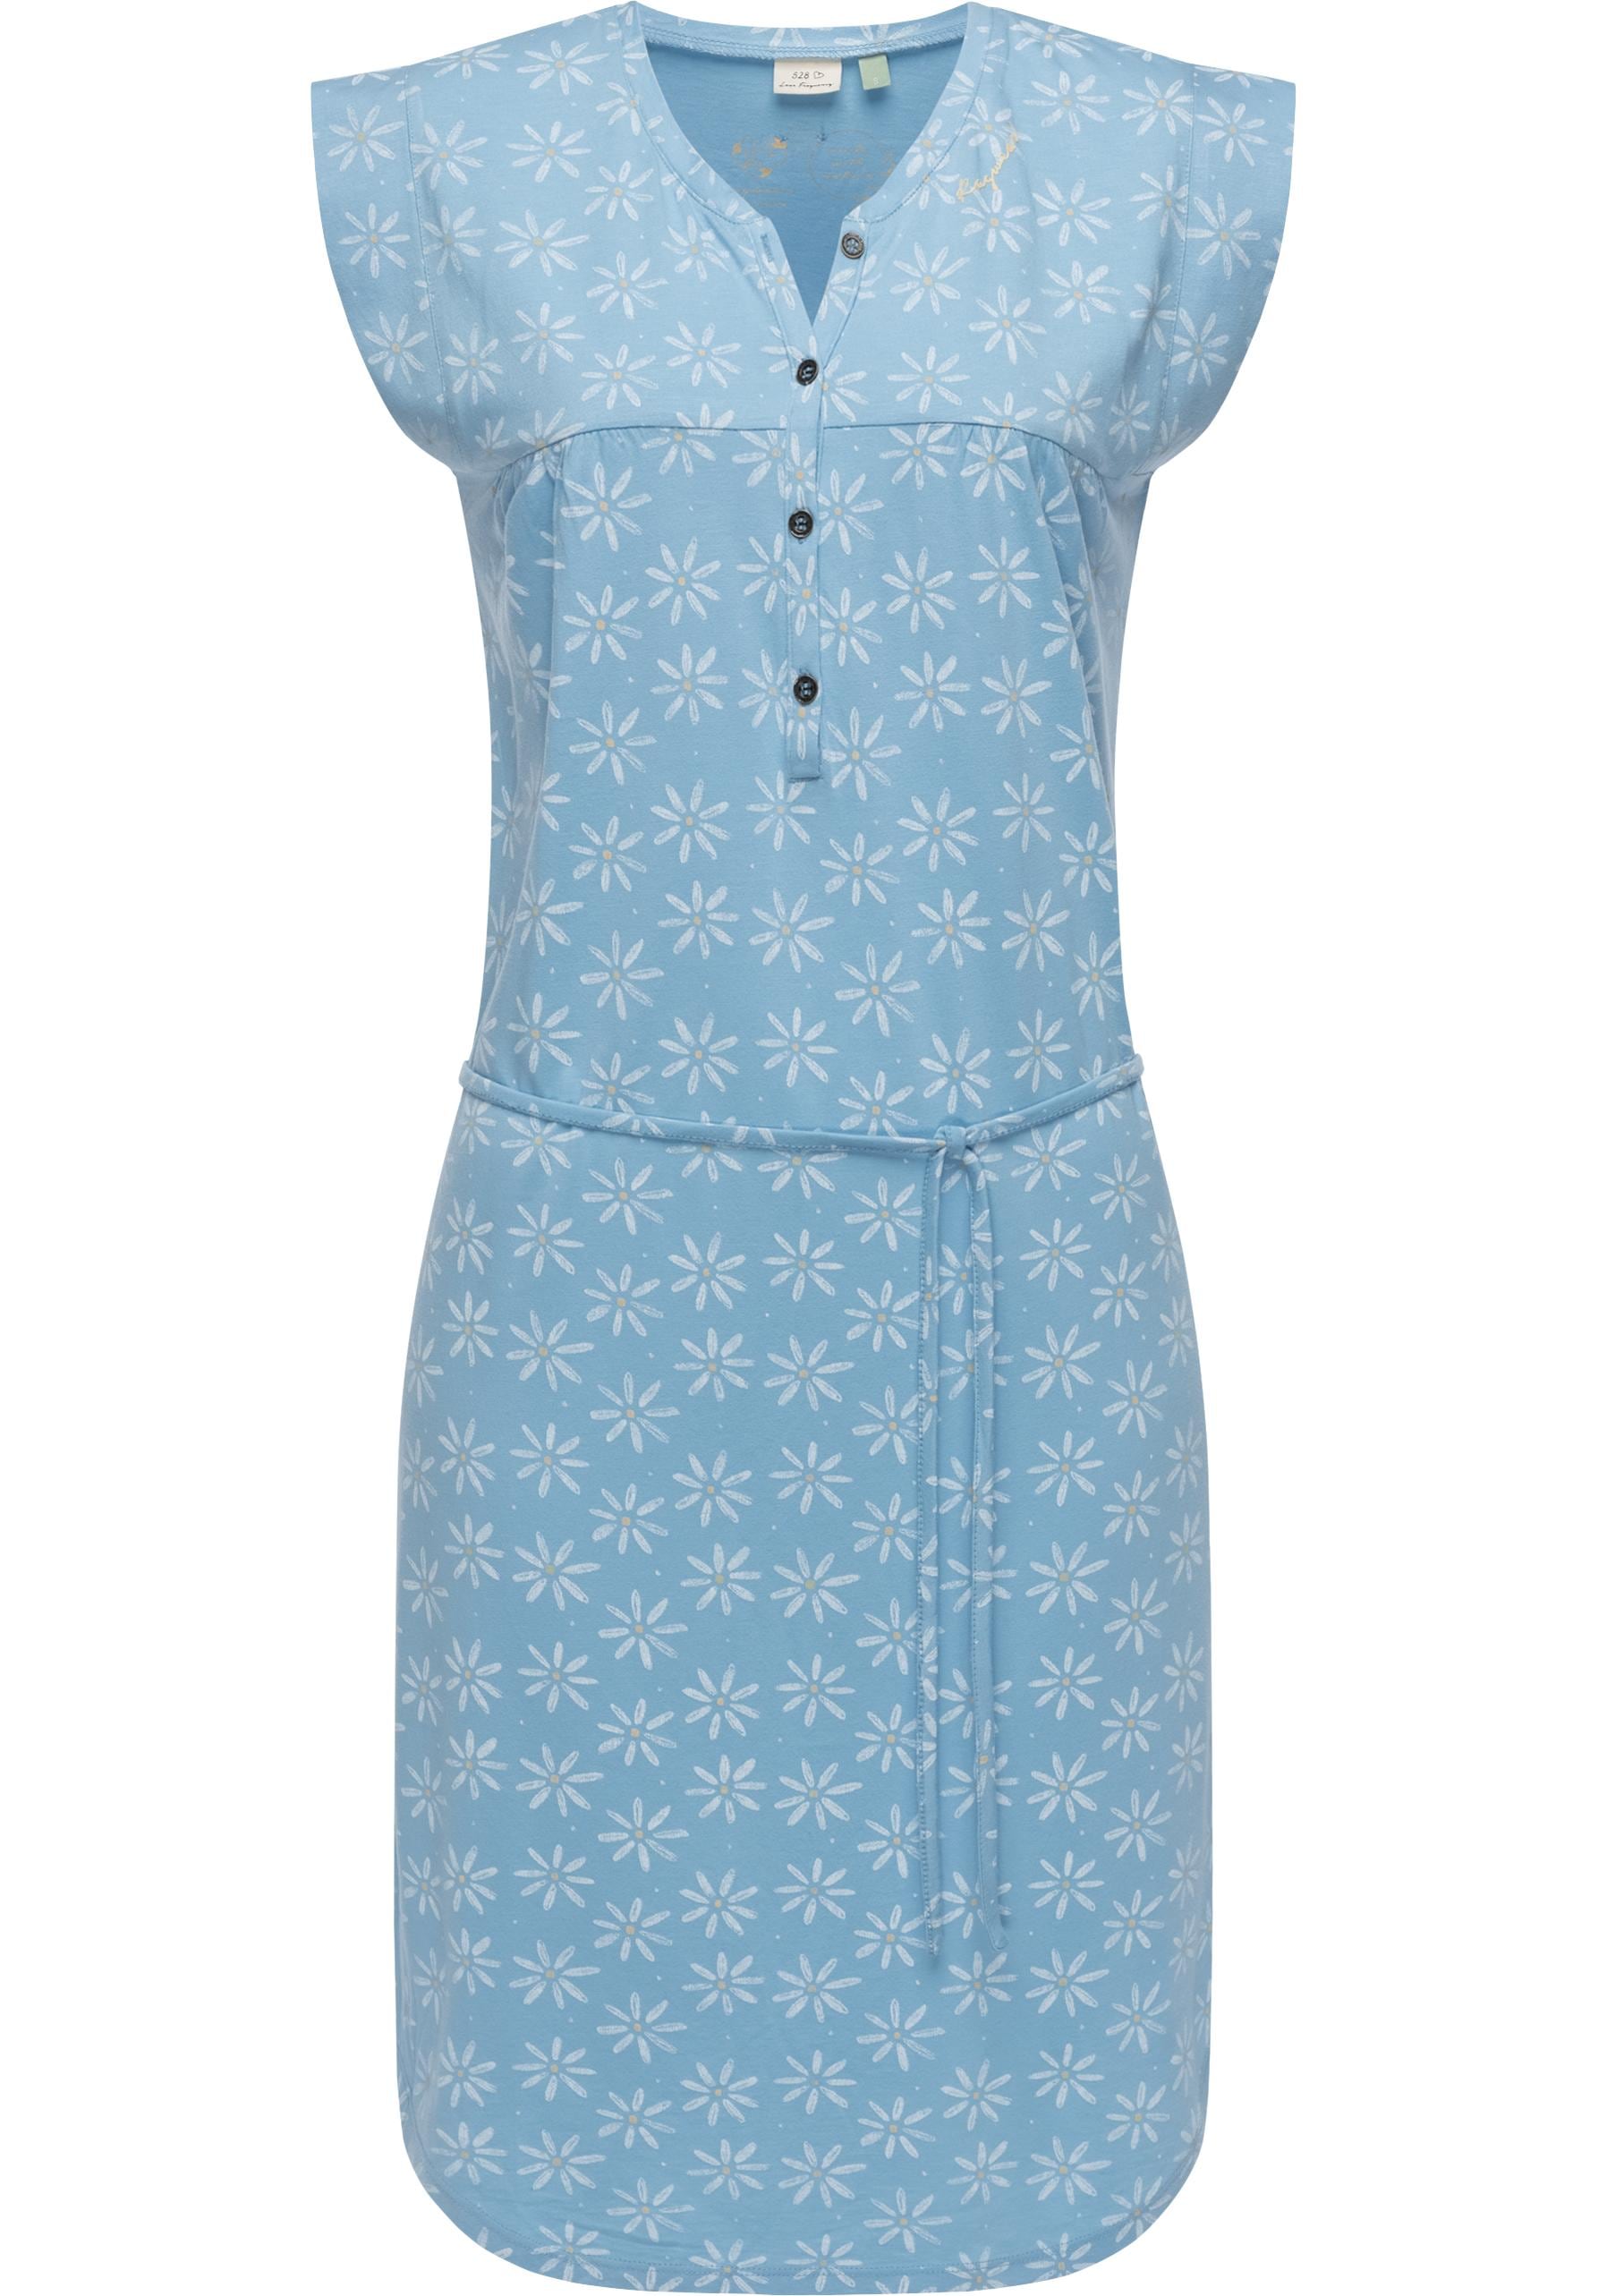 Ragwear Sommerkleid »Zofka«, leichtes Jersey Kleid mit sommerlichem Print